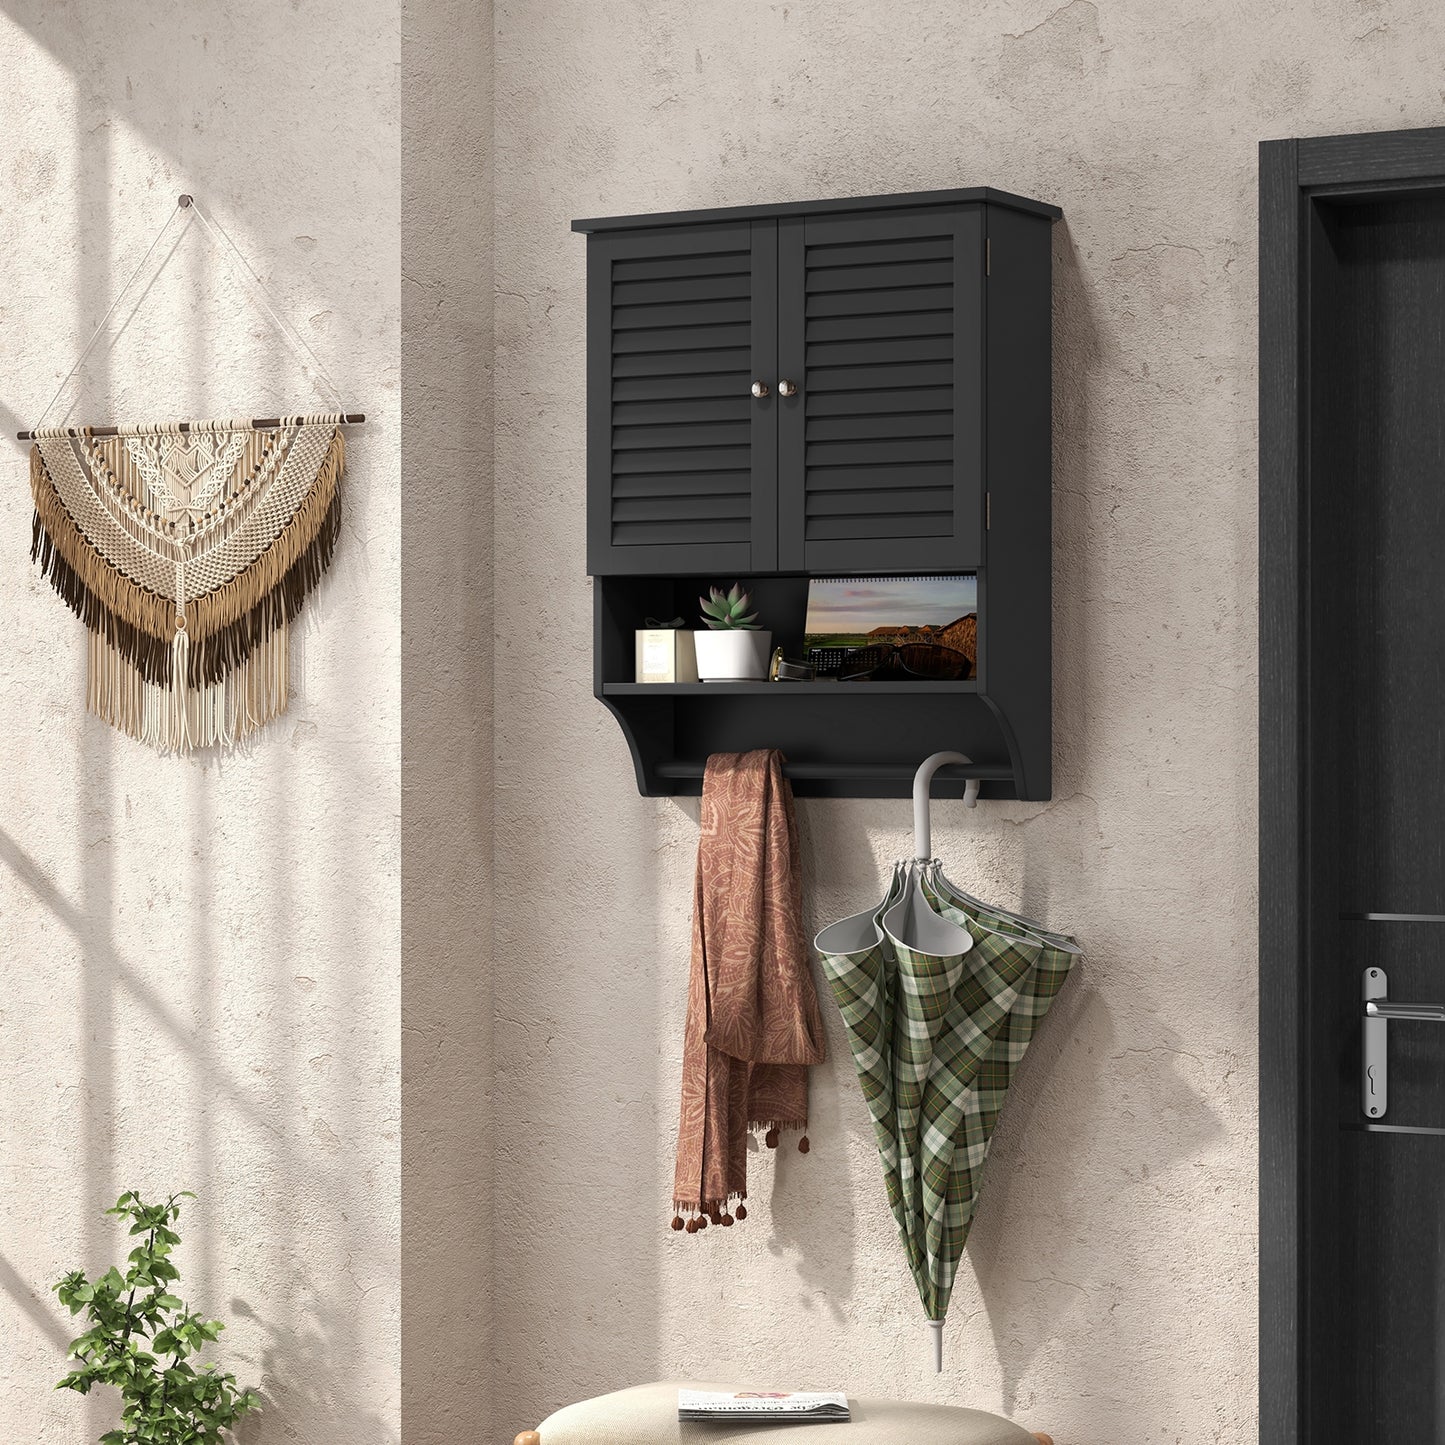 2-Doors Bathroom Wall-Mounted Medicine Cabinet with Towel Bar-Black